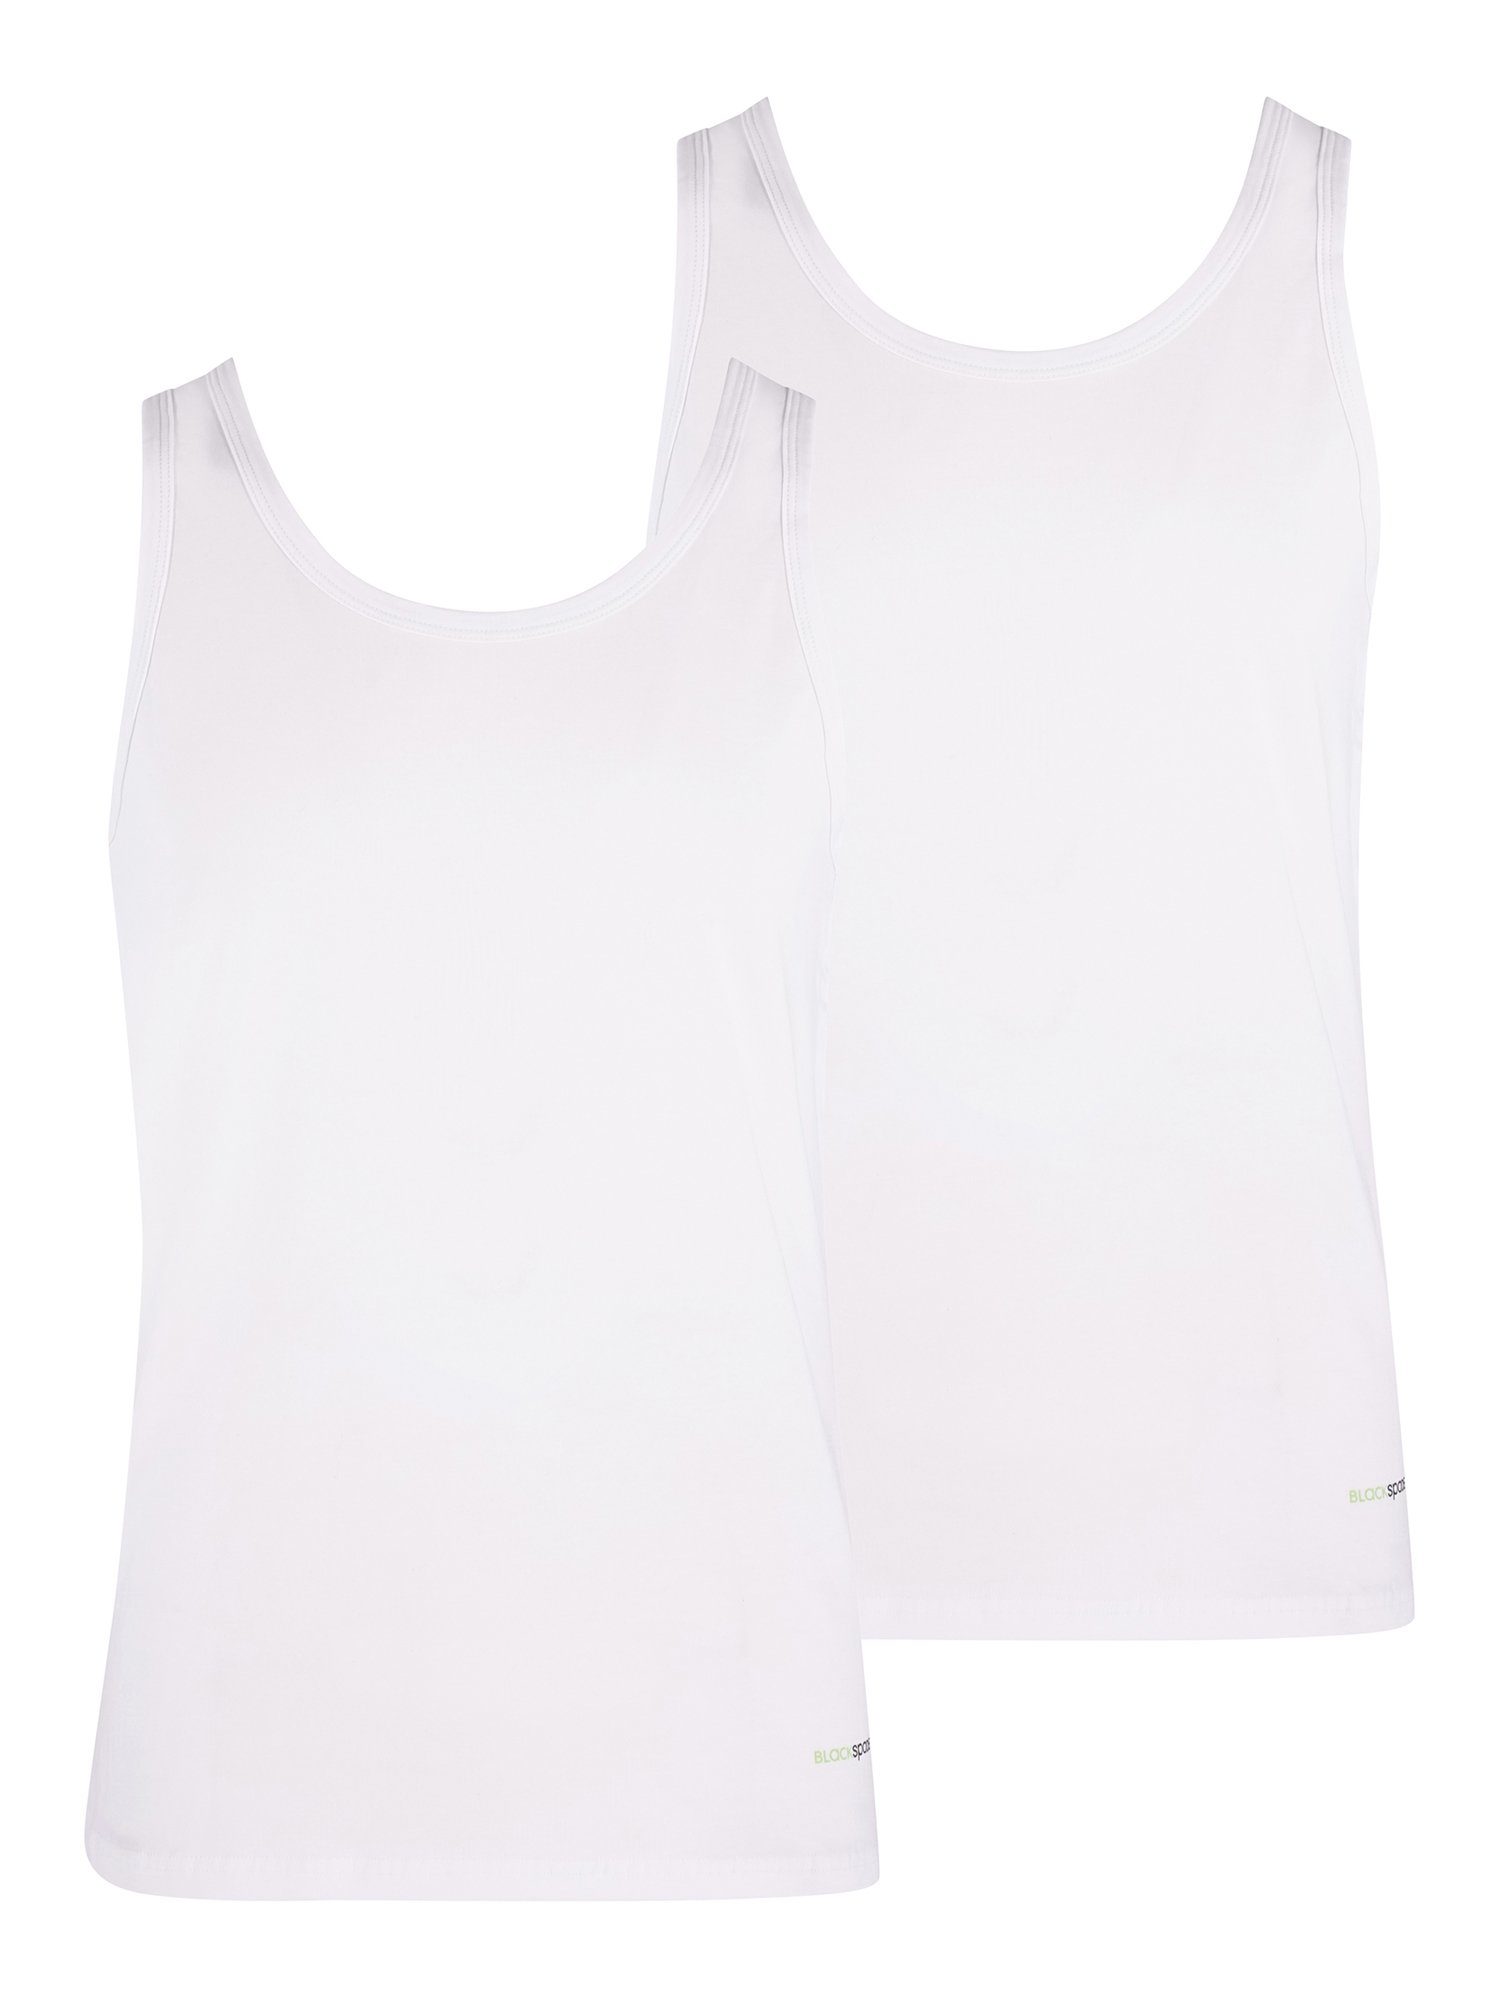 BlackSpade Unterhemd Tender Cotton (2-St) weiß